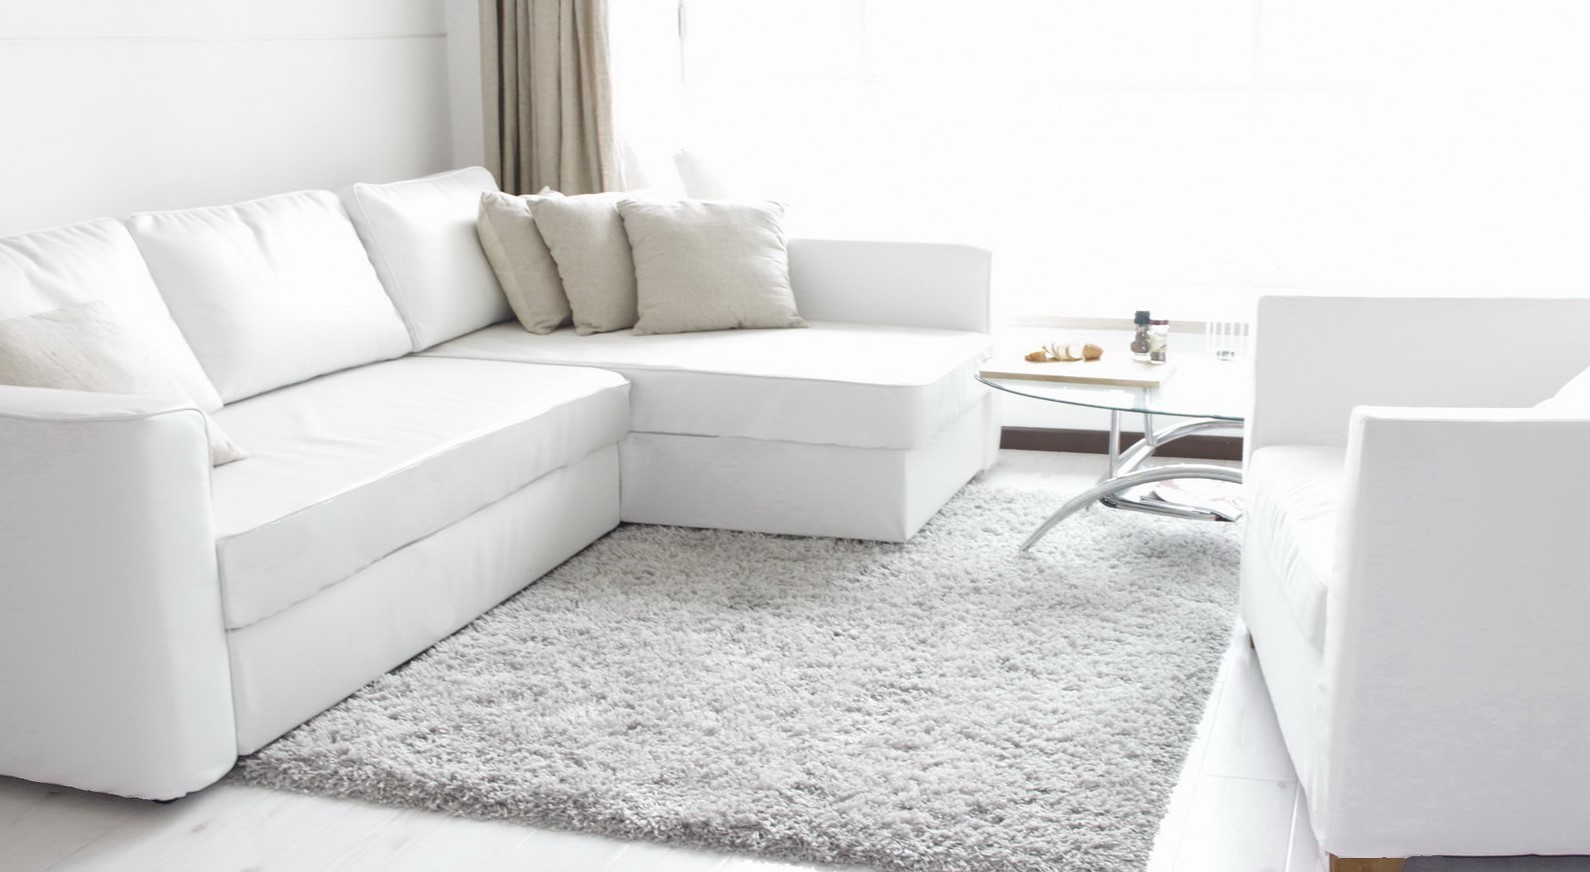 Белый диван из искусственной кожи можно использовать в скандинавском интерьере и в гостиной в стиле минимализм